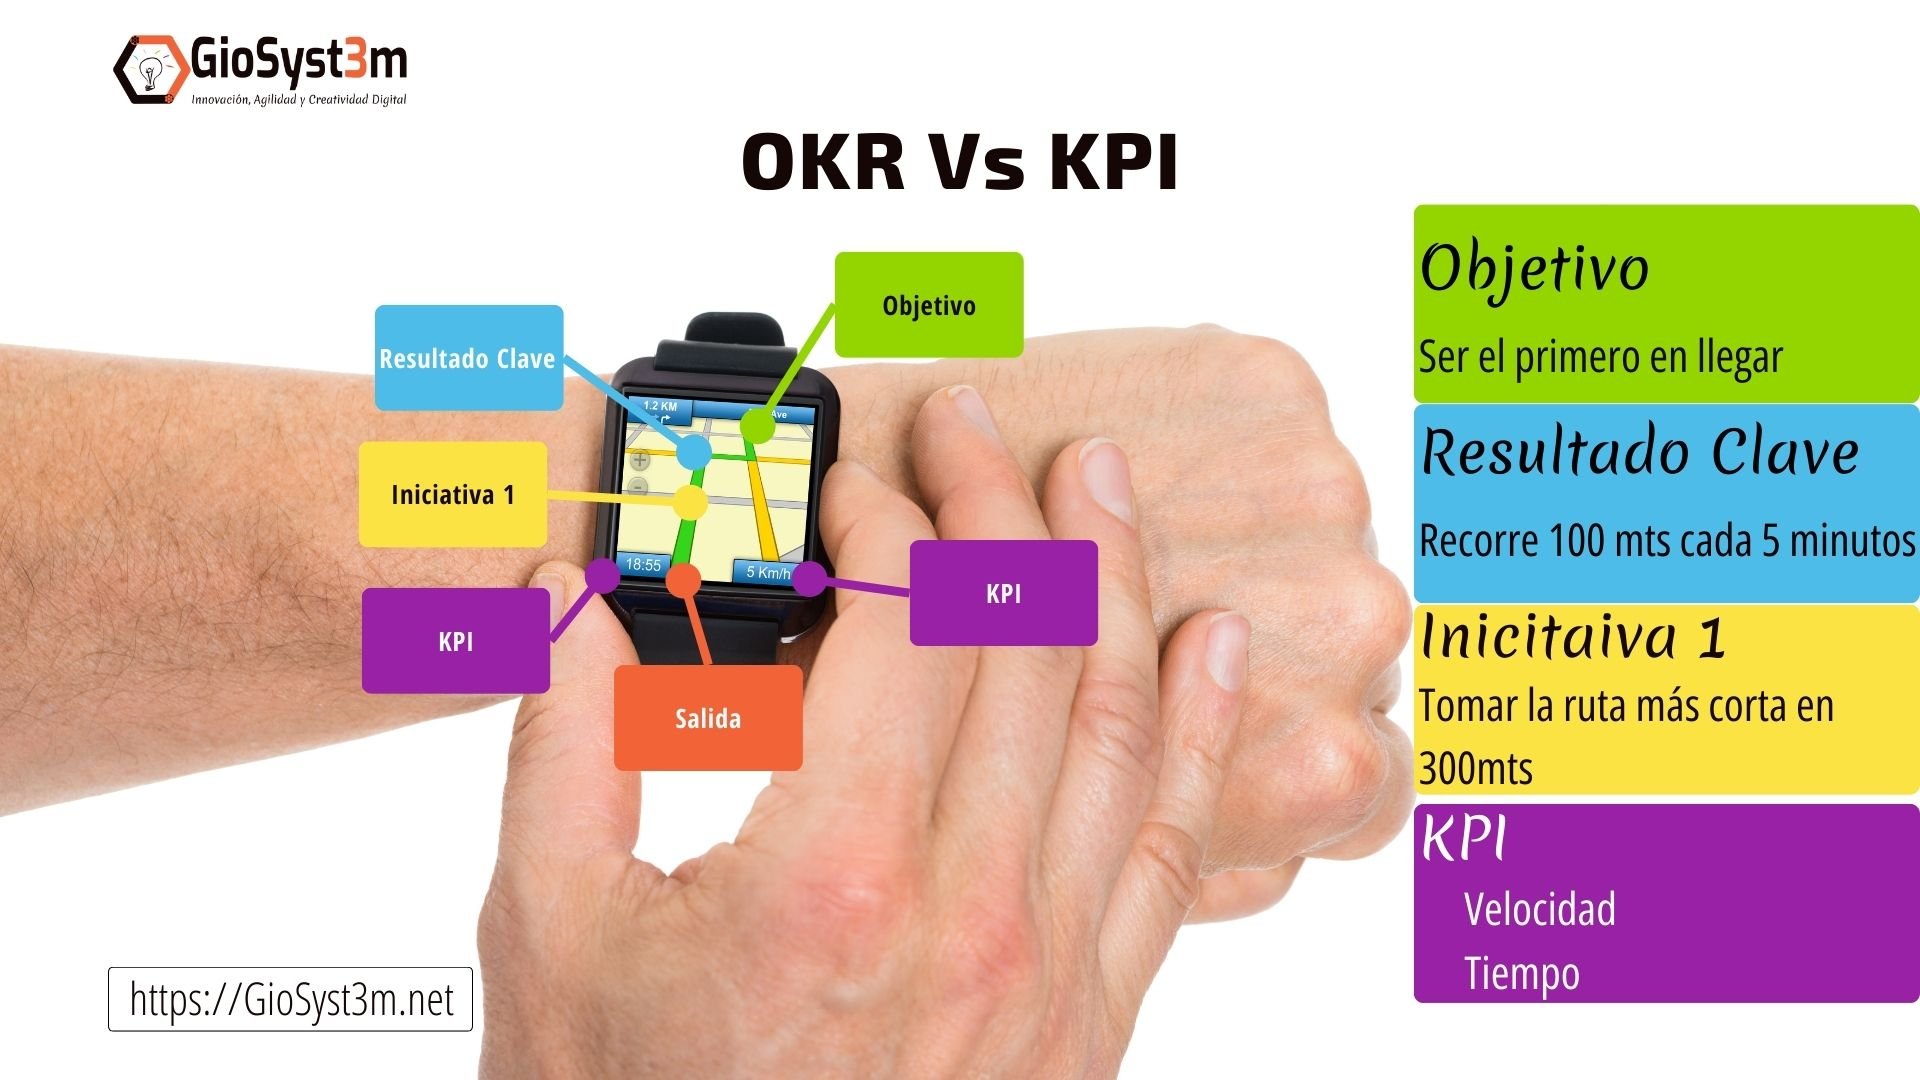 OKR vs KPI Ejemplo - GioSyst3m